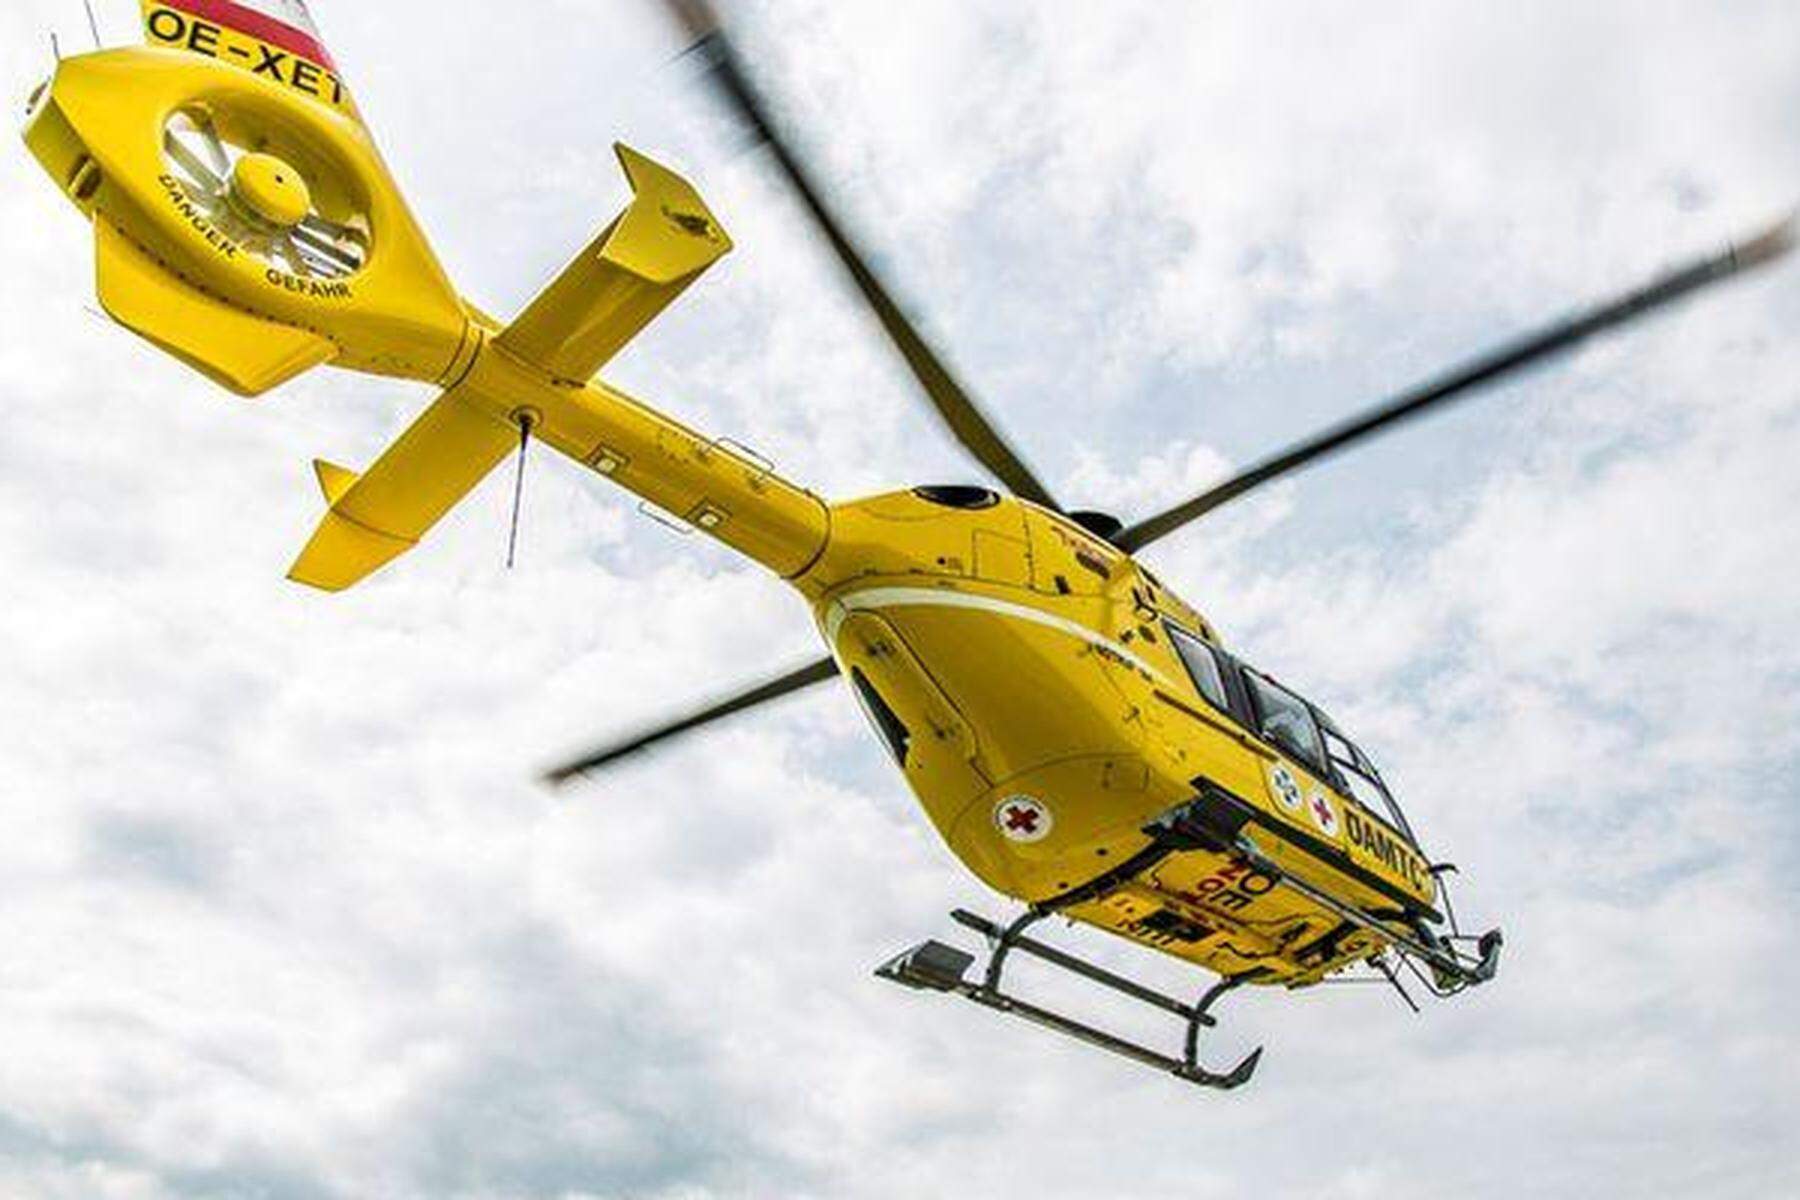 Hubschrauber-Bergung: Wanderer in Kärnten 20 Meter abgestürzt und schwer verletzt